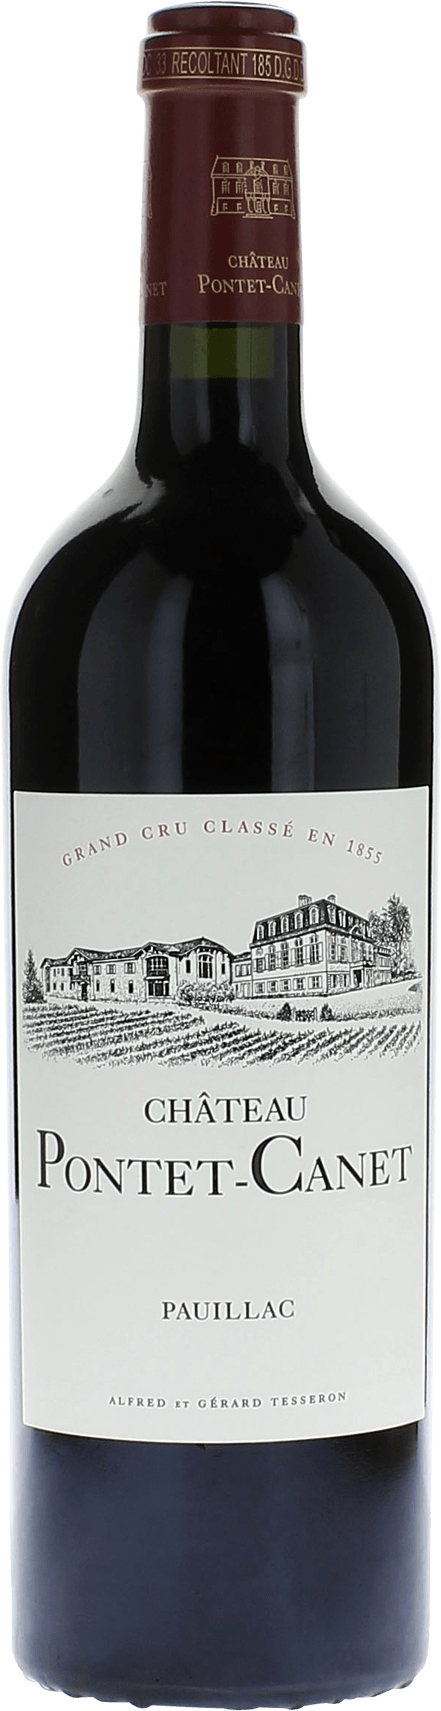 Pontet canet 2021 5me Grand cru class Pauillac, Bordeaux rouge